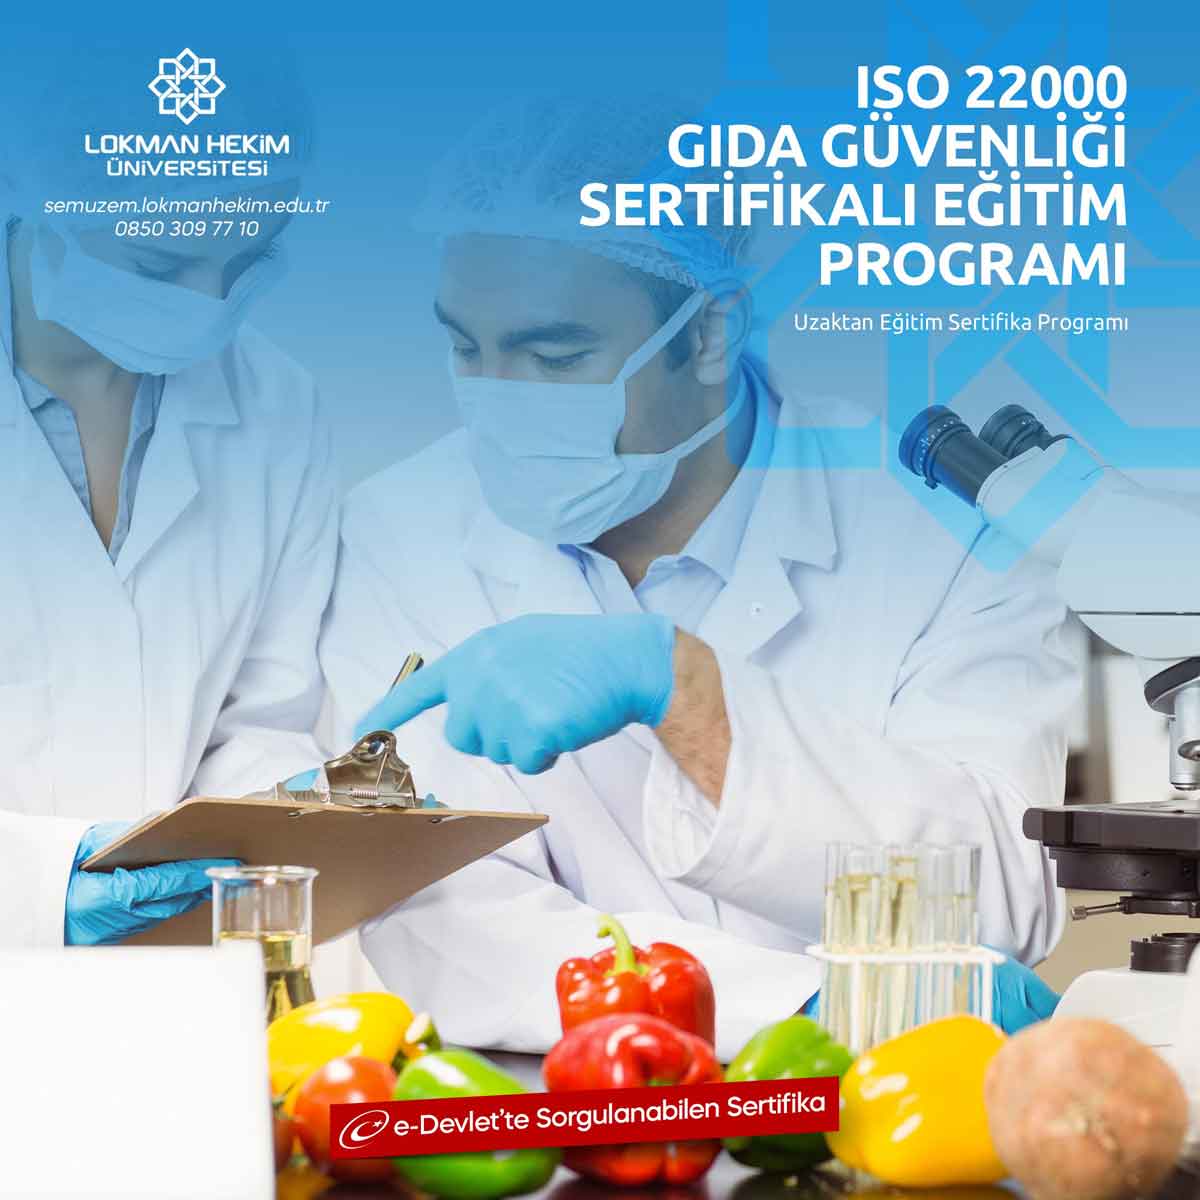 ISO 22000 Gıda Güvenliği Sertifikası Nedir, Nasıl Alınır?